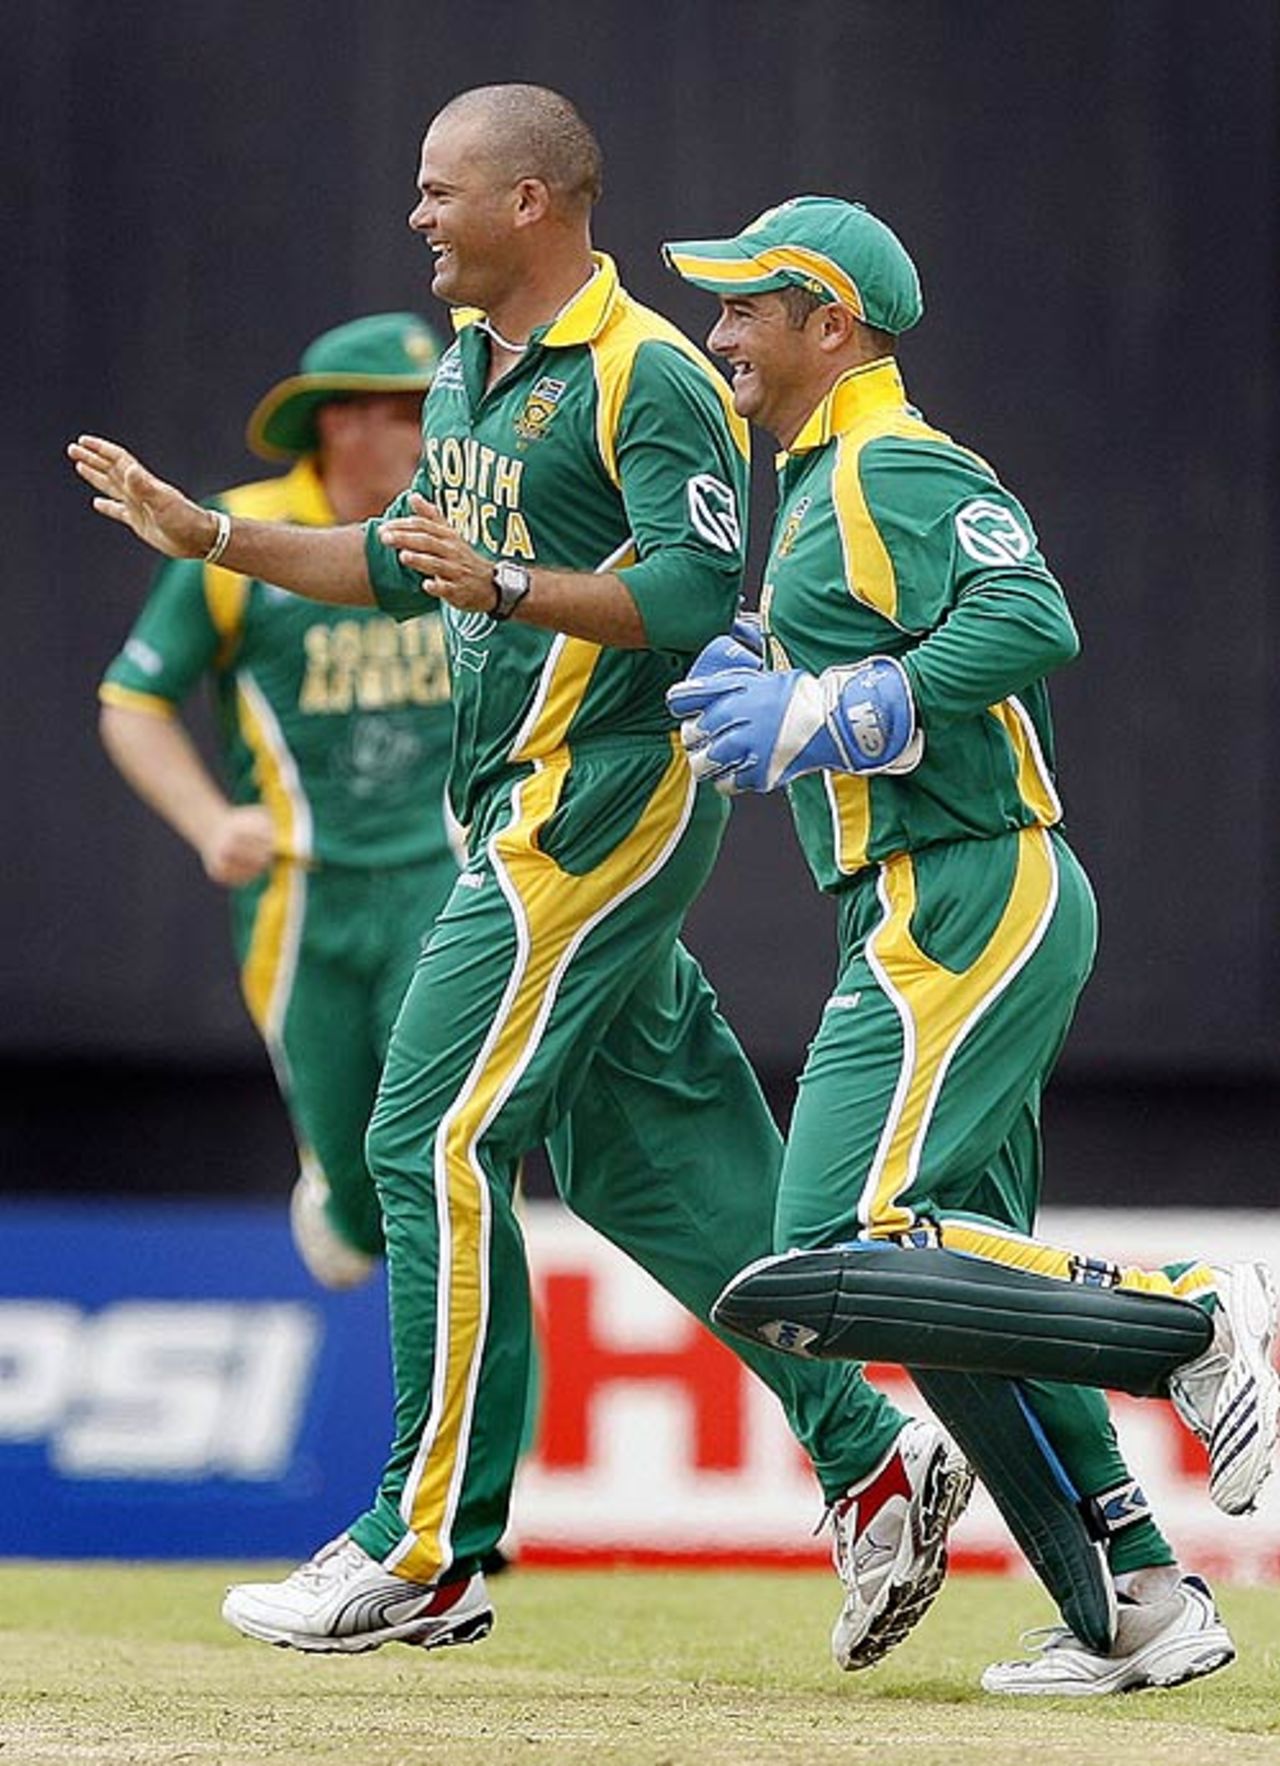 Charl Langeveldt celebrates Sanath Jayasuriya's wicket, South Africa v Sri Lanka, Super Eights, Guyana, March 28, 2007